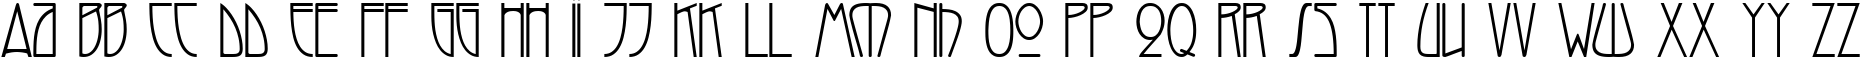 Пример написания английского алфавита шрифтом Melba Normal